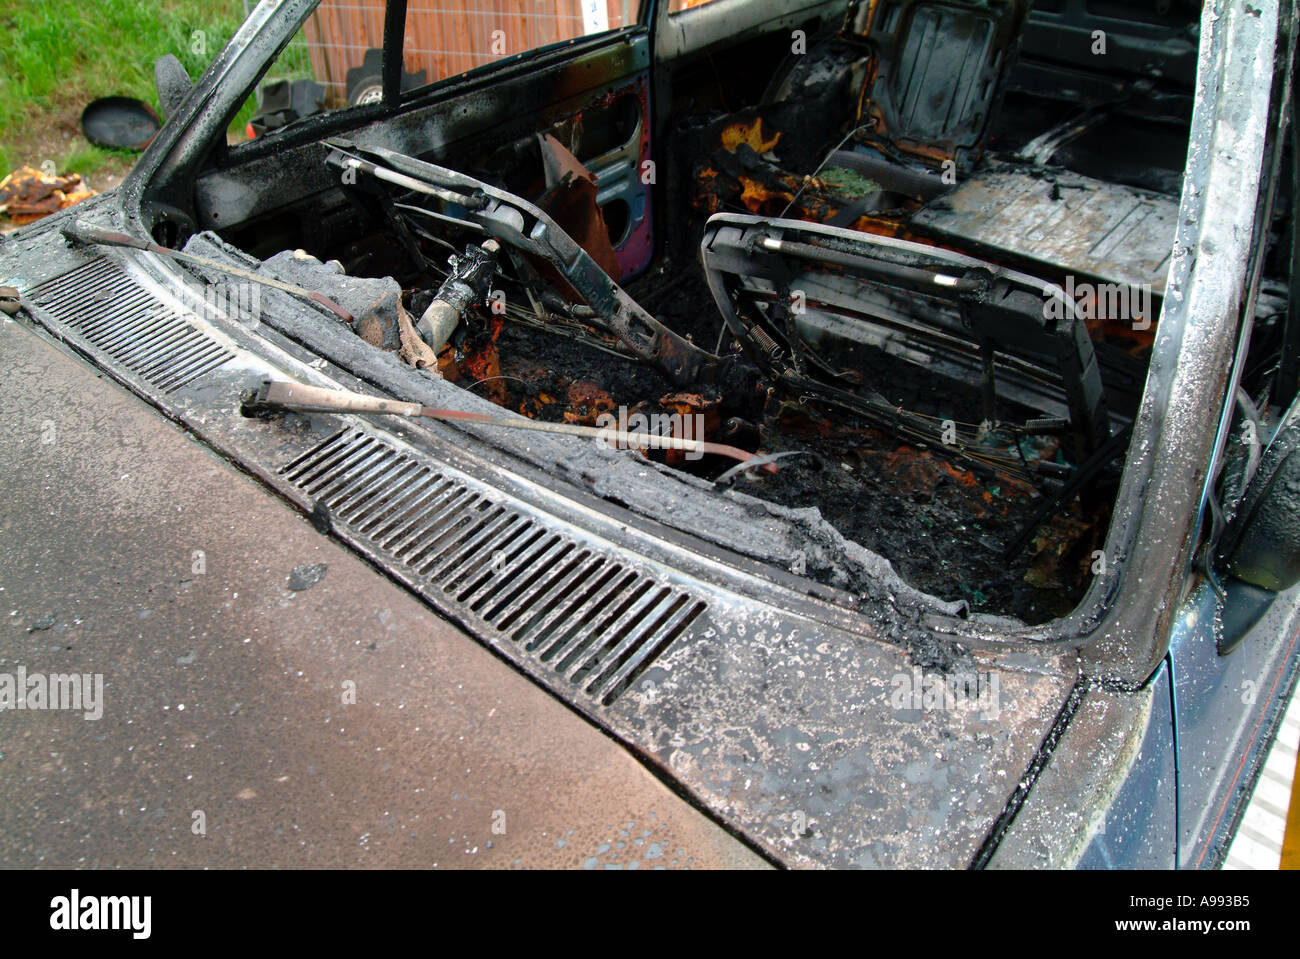 Burnt Out voiture abandonnée Banque D'Images